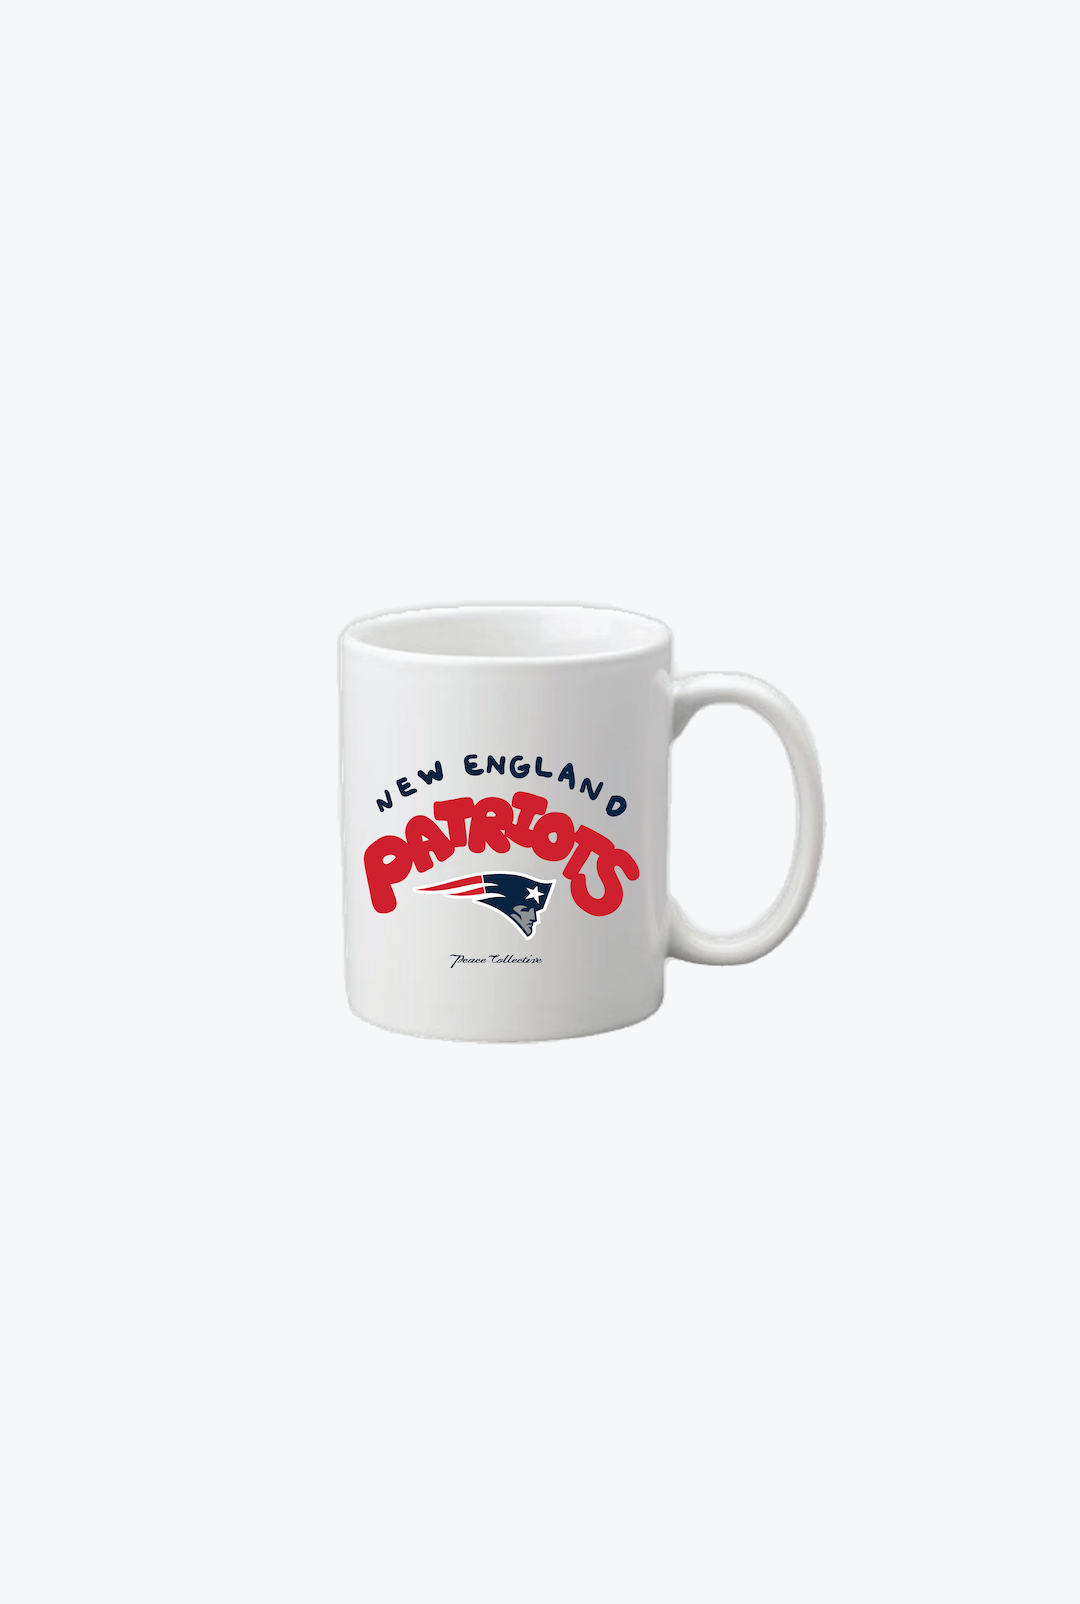 New England Patriots Mug - White